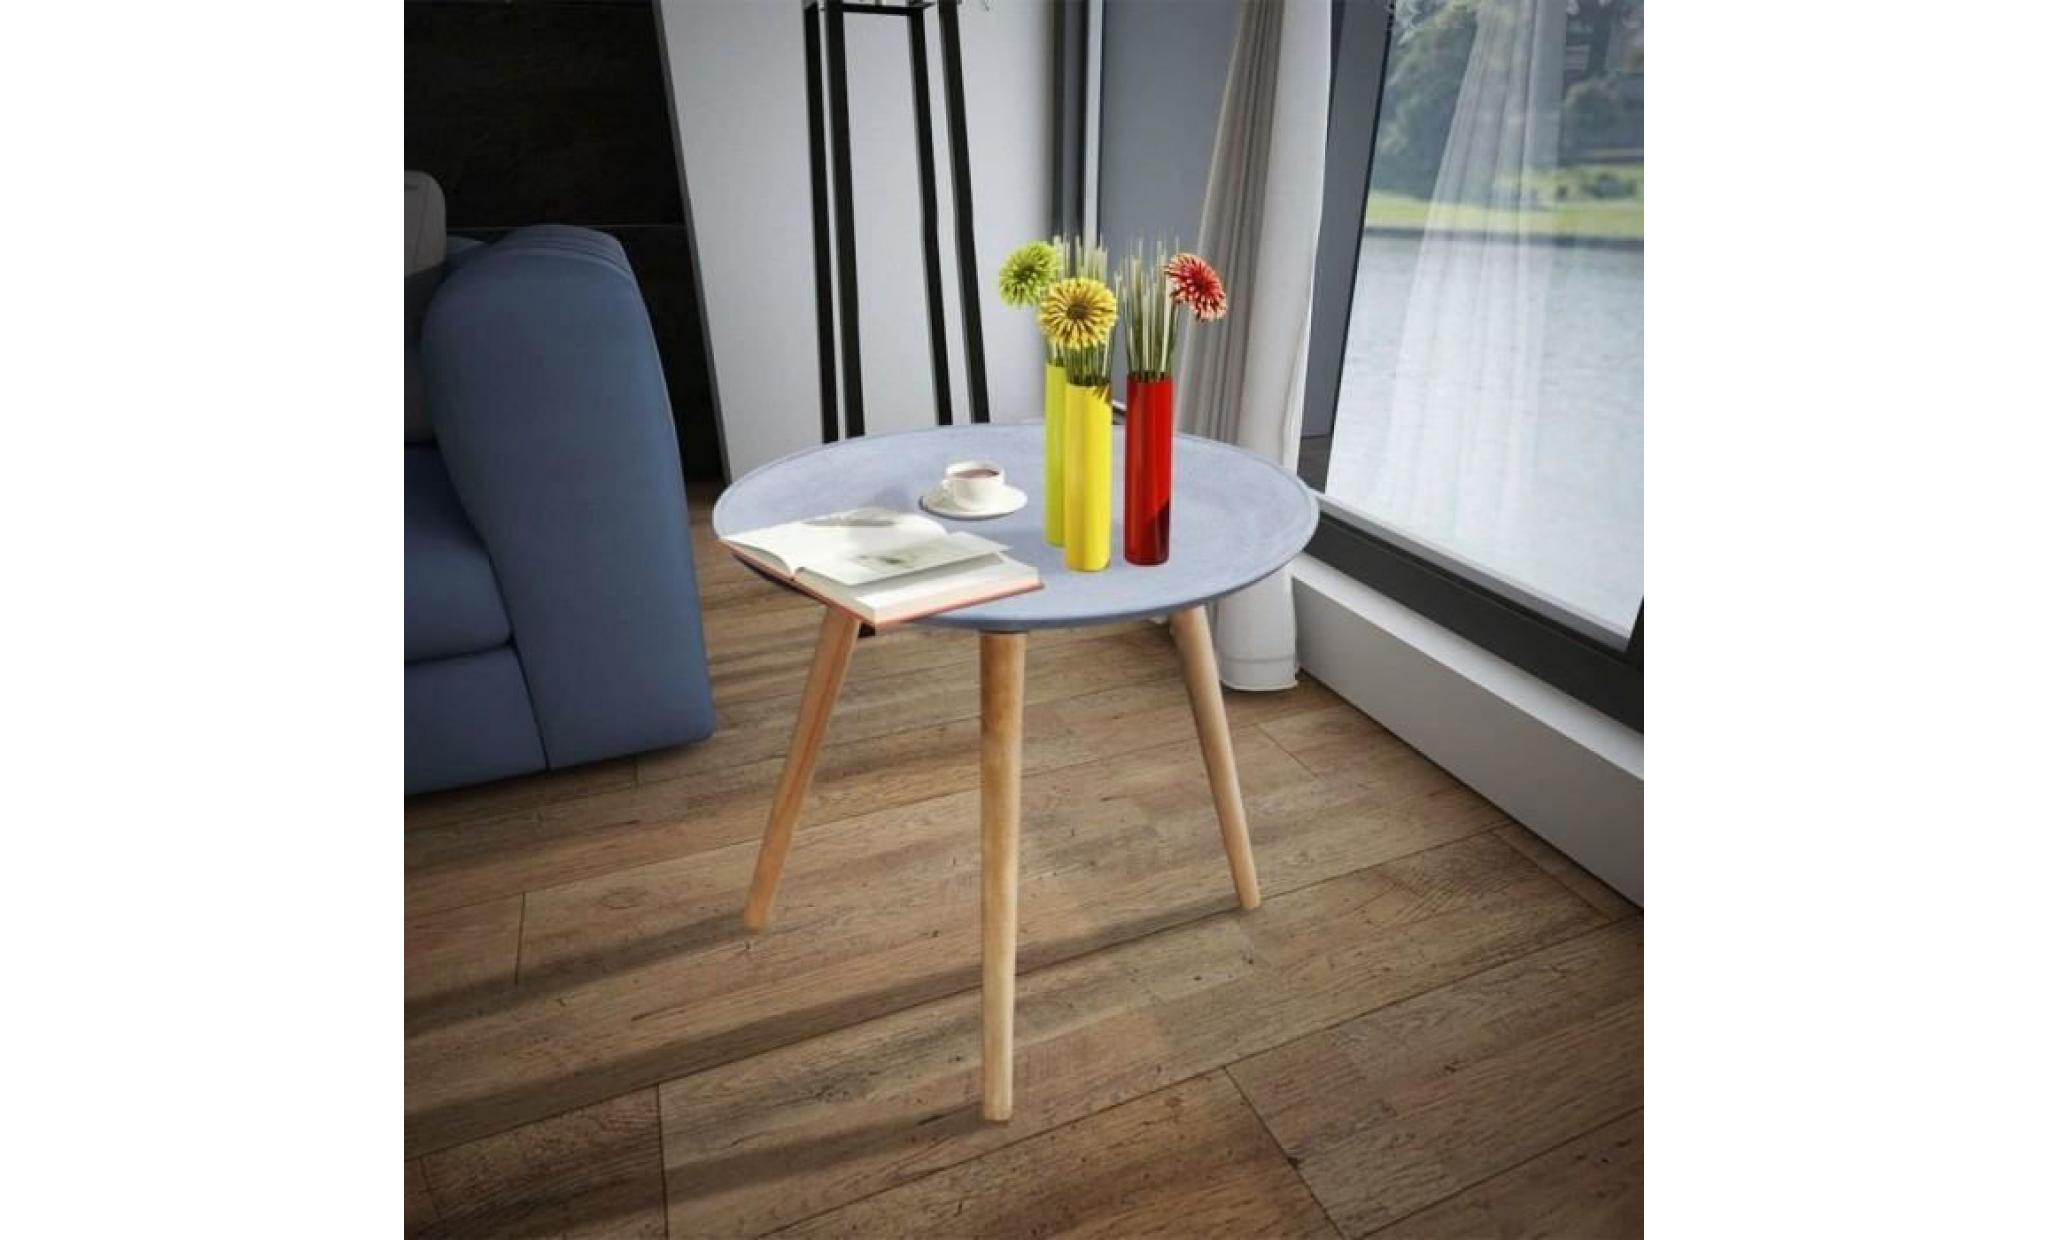 r106 couleur gris cement tokyo cette table d'appoint ronde, avec son design epure et